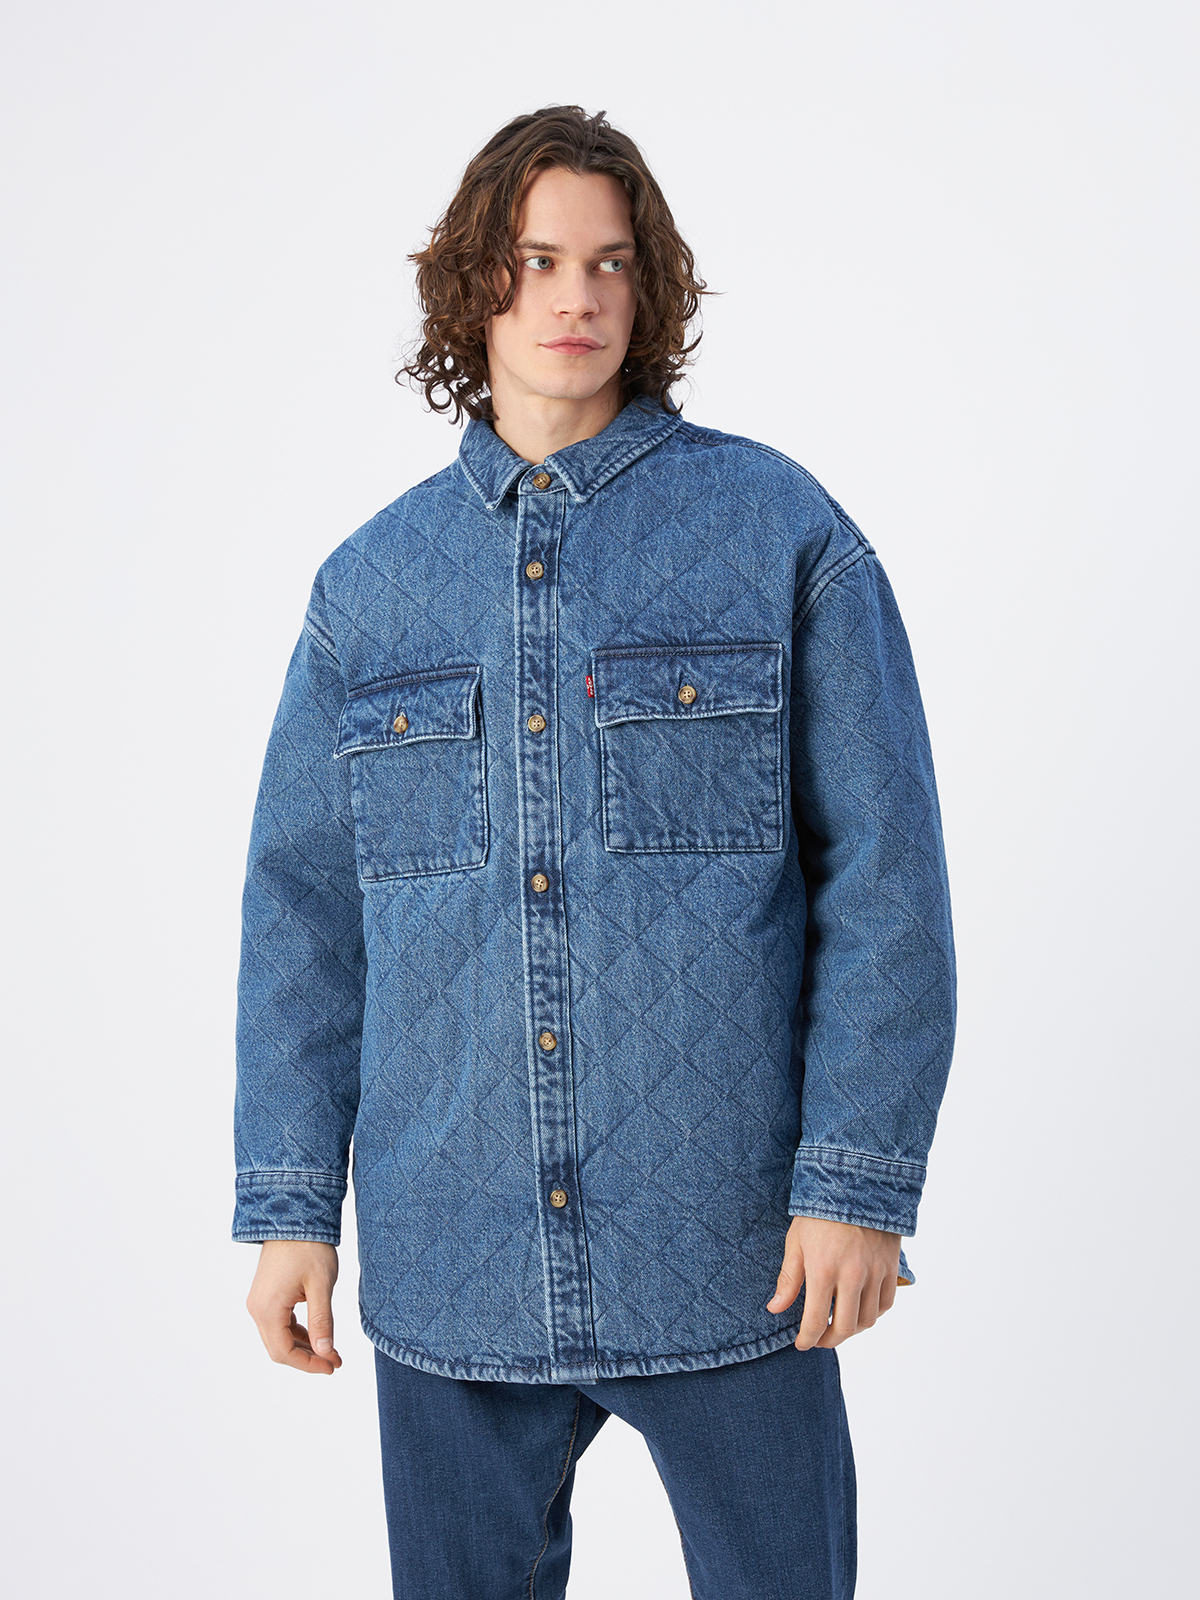 Джинсовая куртка мужская Levi's A0682-0001 синяя, джинсовая куртка, синий  - купить